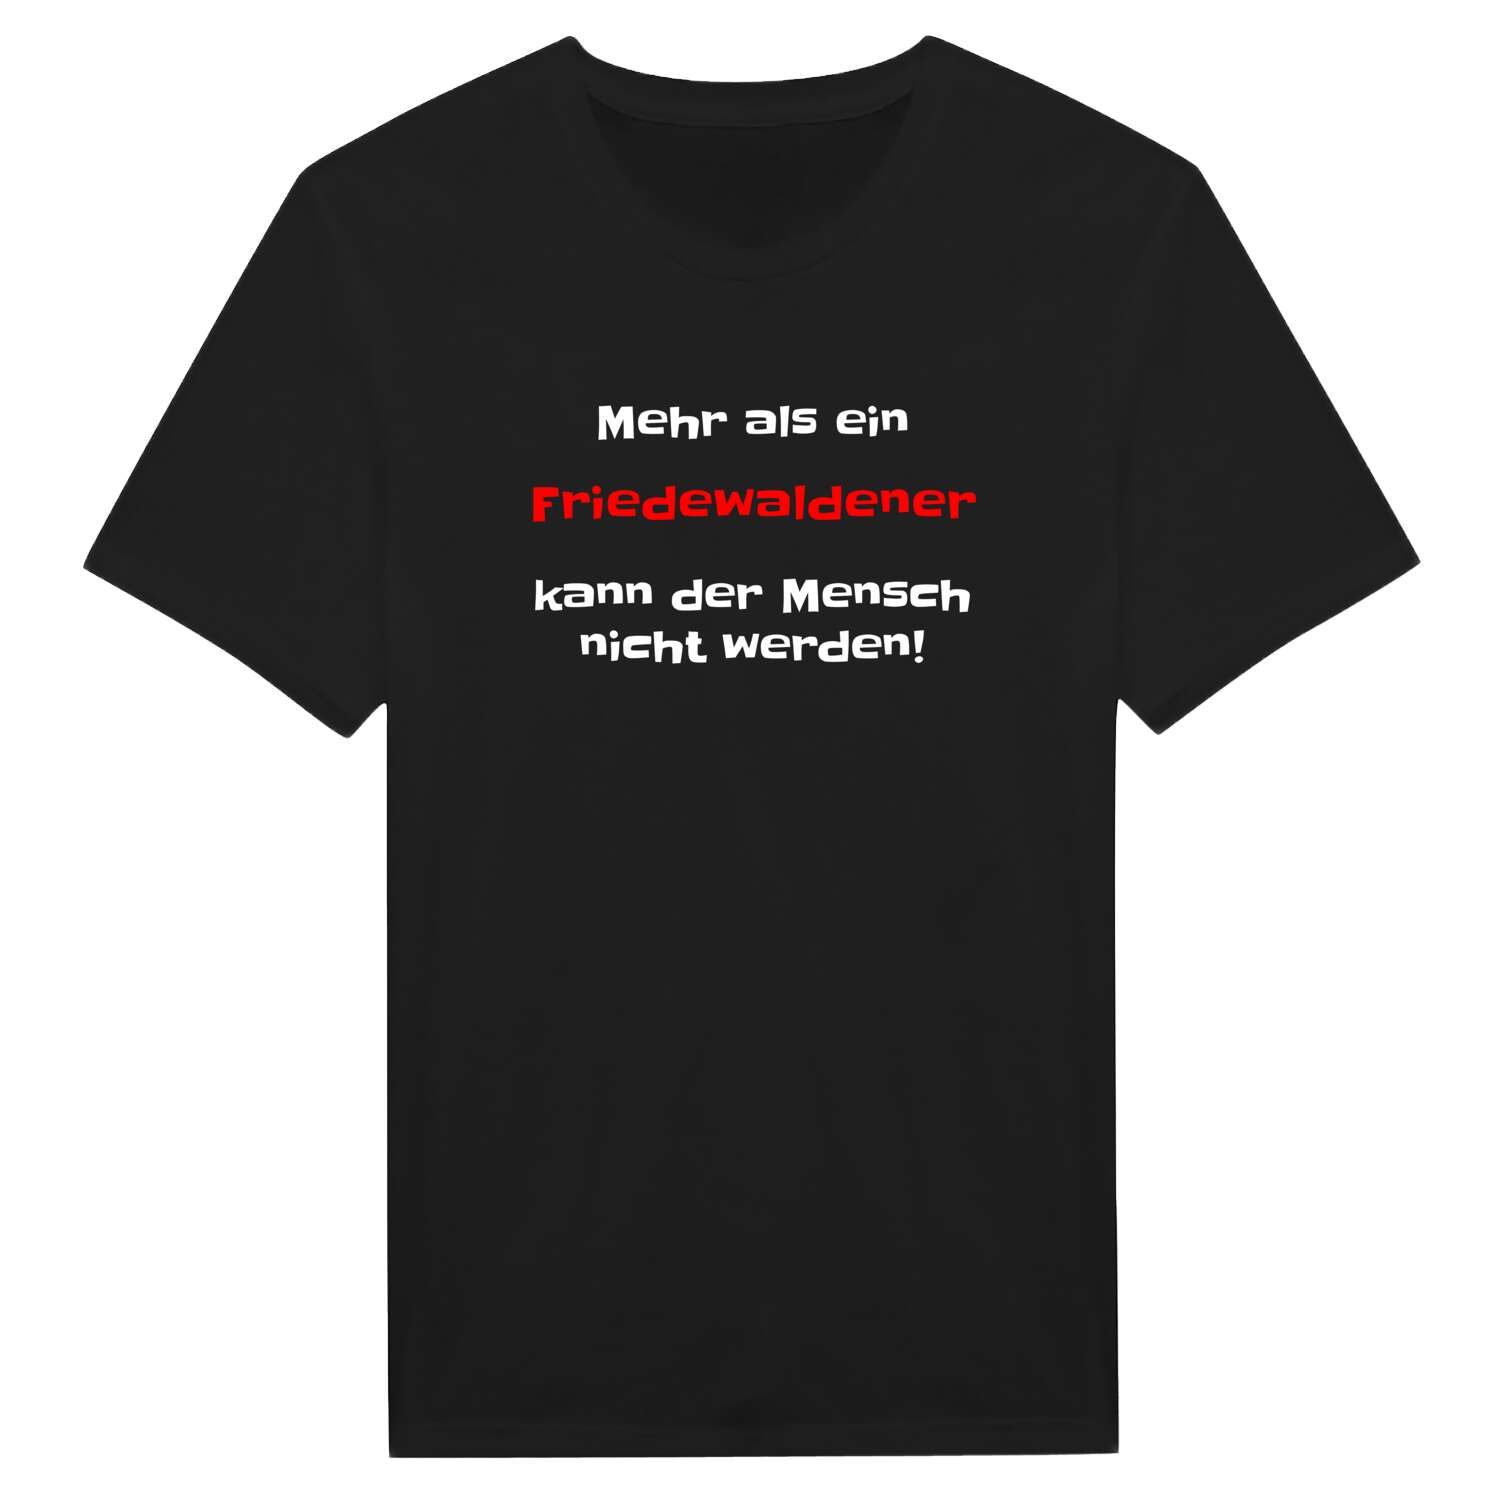 Friedewalde T-Shirt »Mehr als ein«